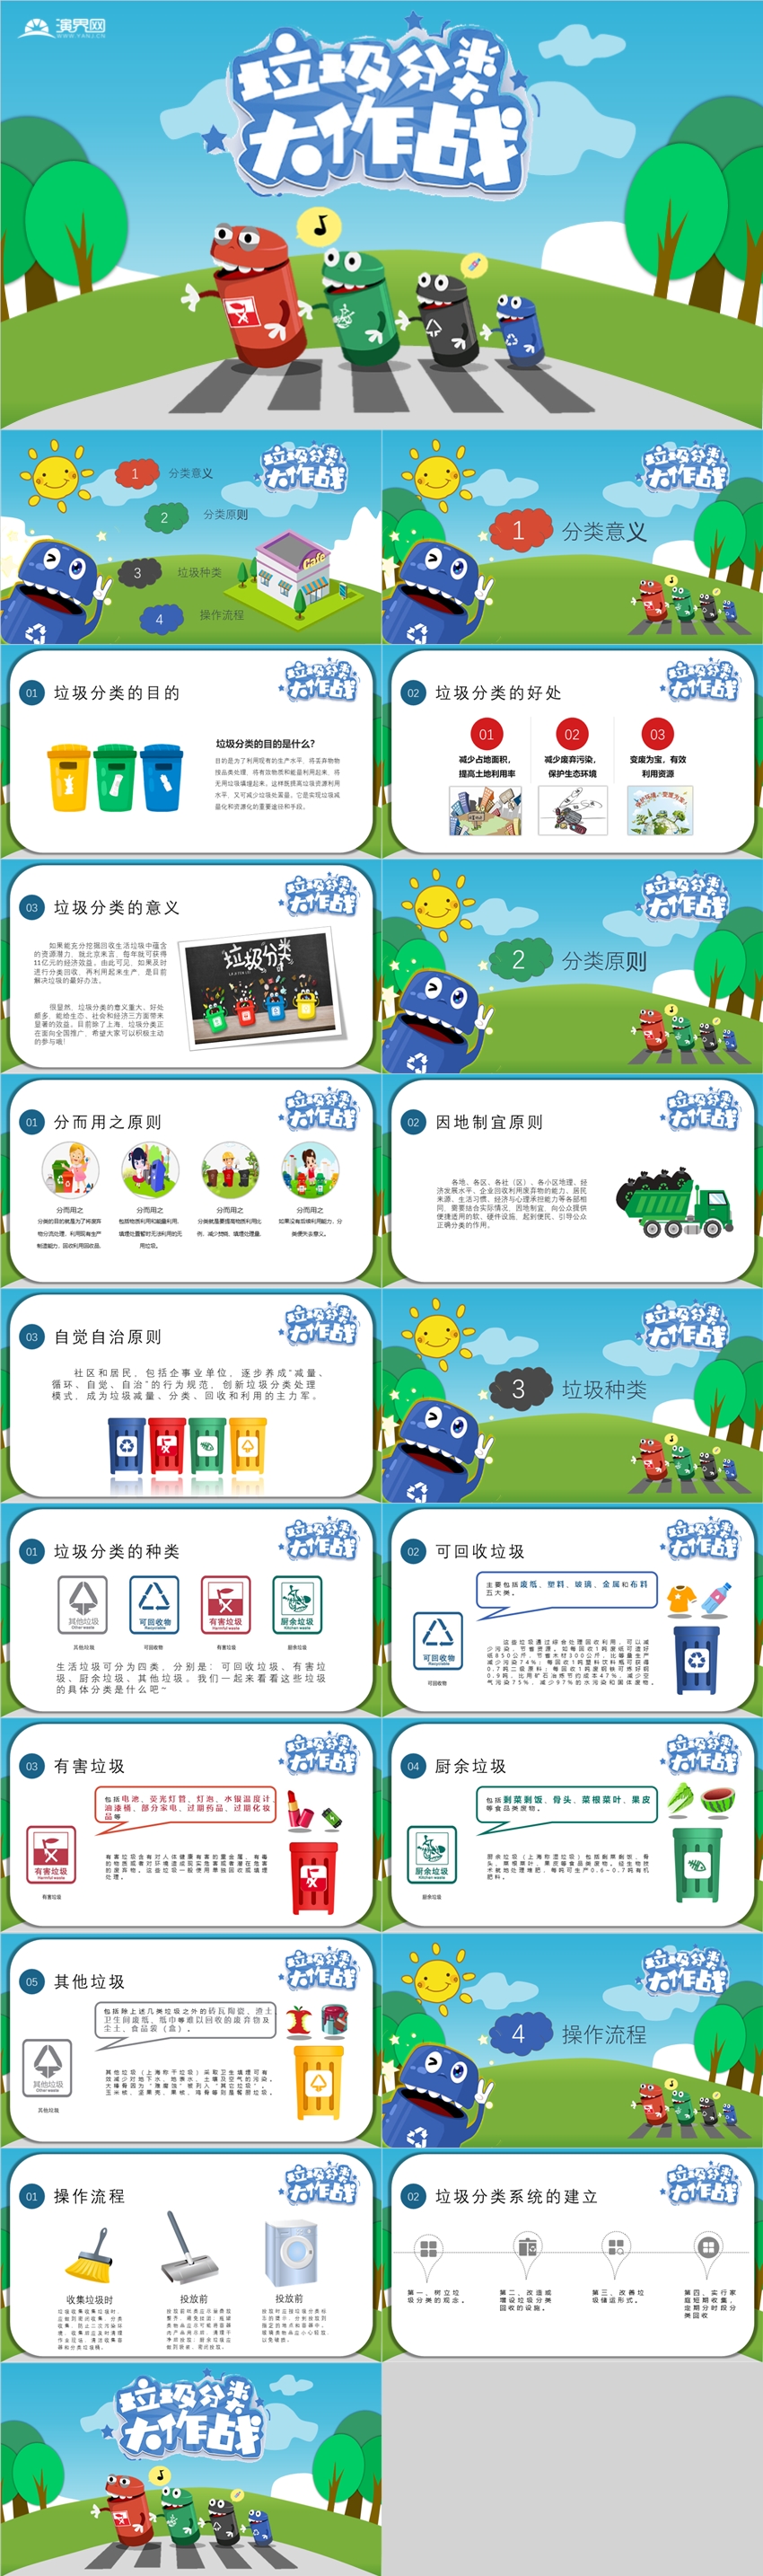 垃圾分类幼儿教学卡通课件环保教育动态模板